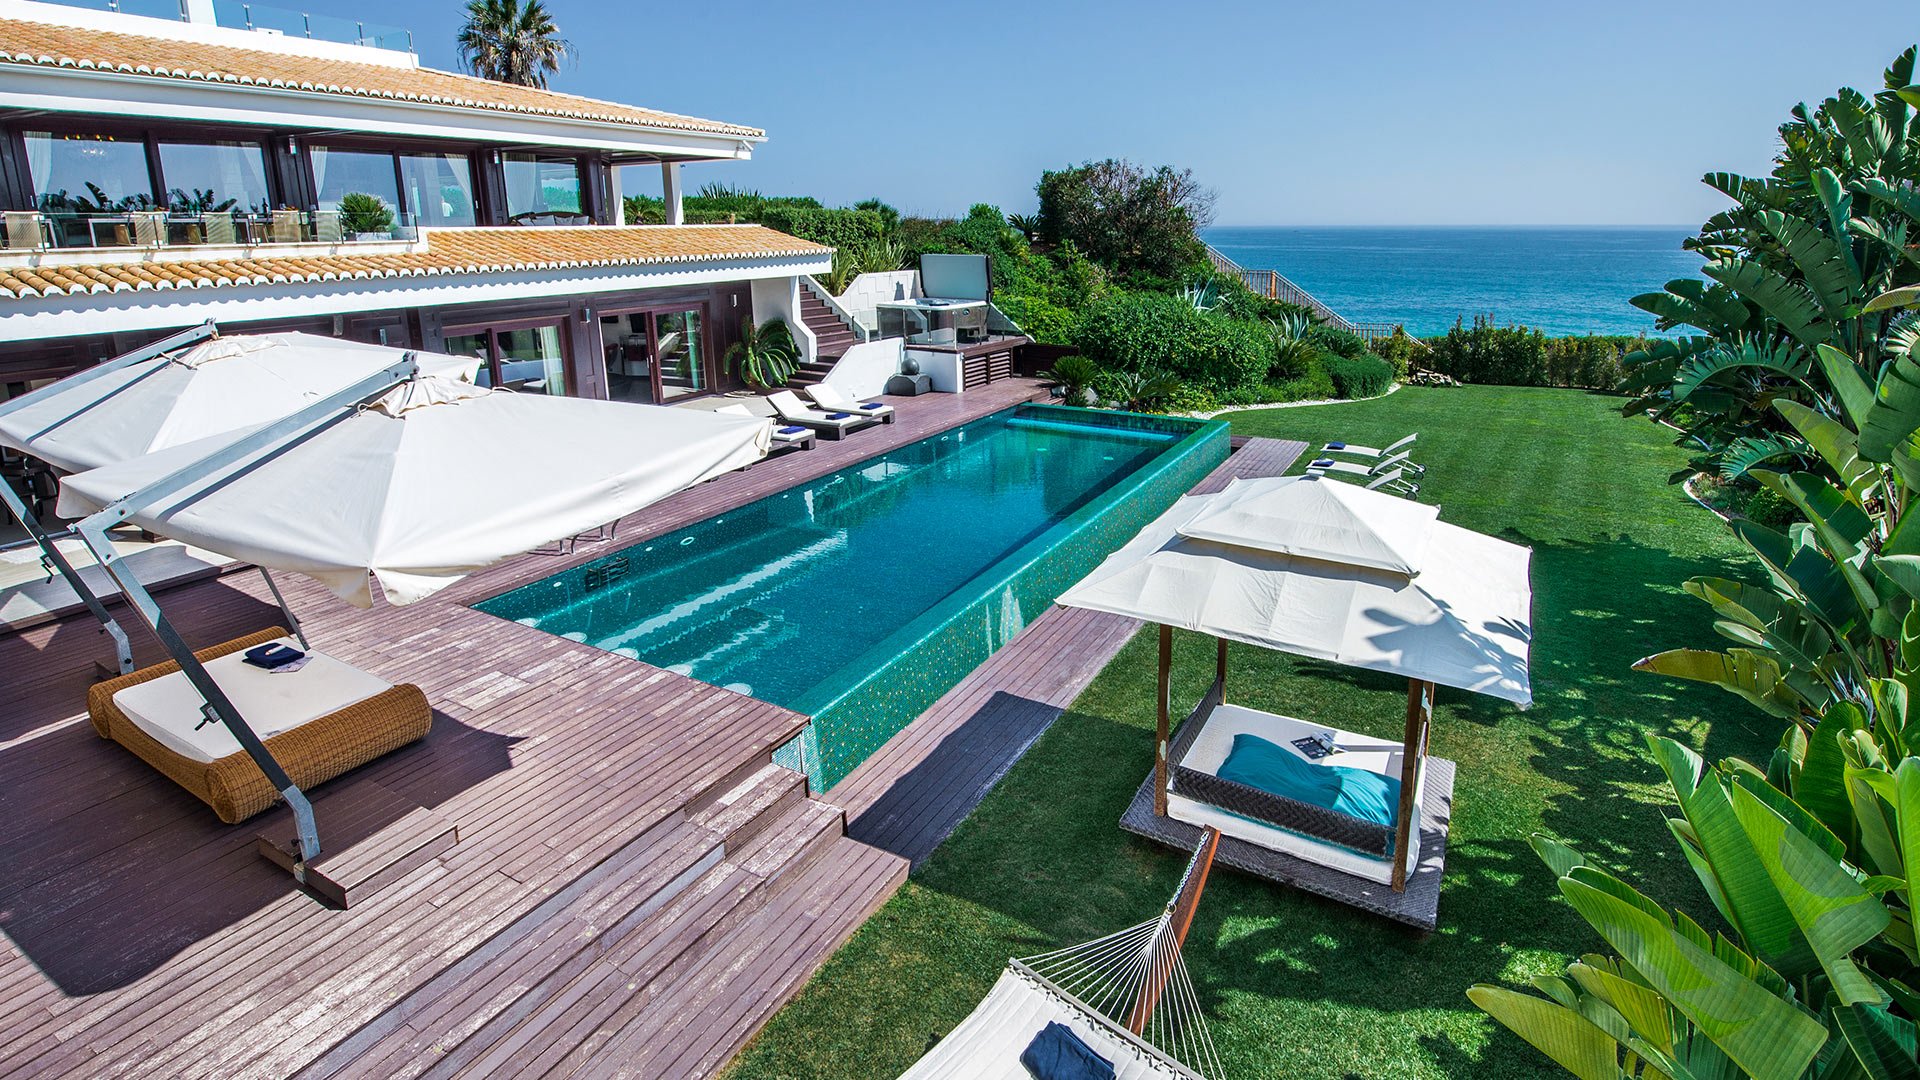 Luxury villa rentals Albufeira Algarve Portugal: the TOP